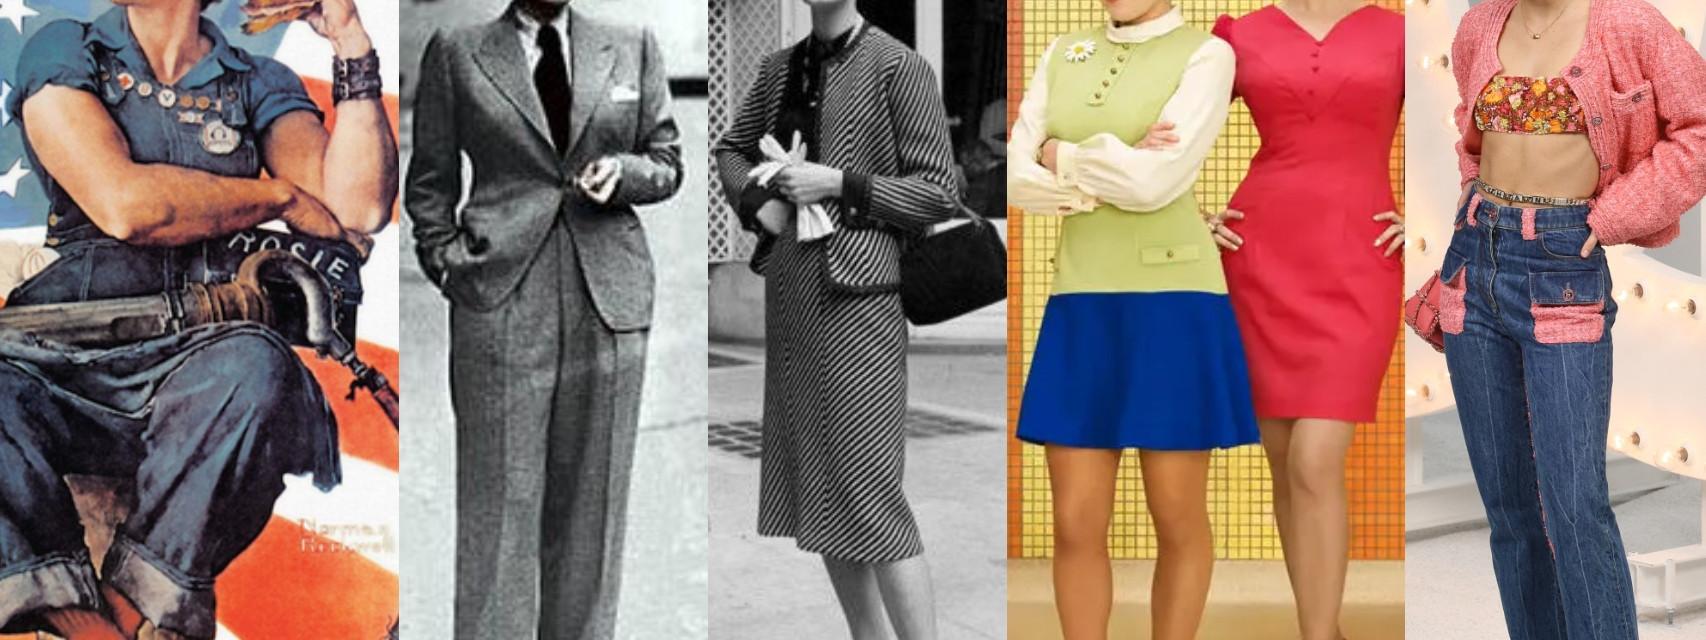 Los 'uniformes de trabajo' de las mujeres: del traje Chanel al vestido  'wrap', vestidas para triunfar